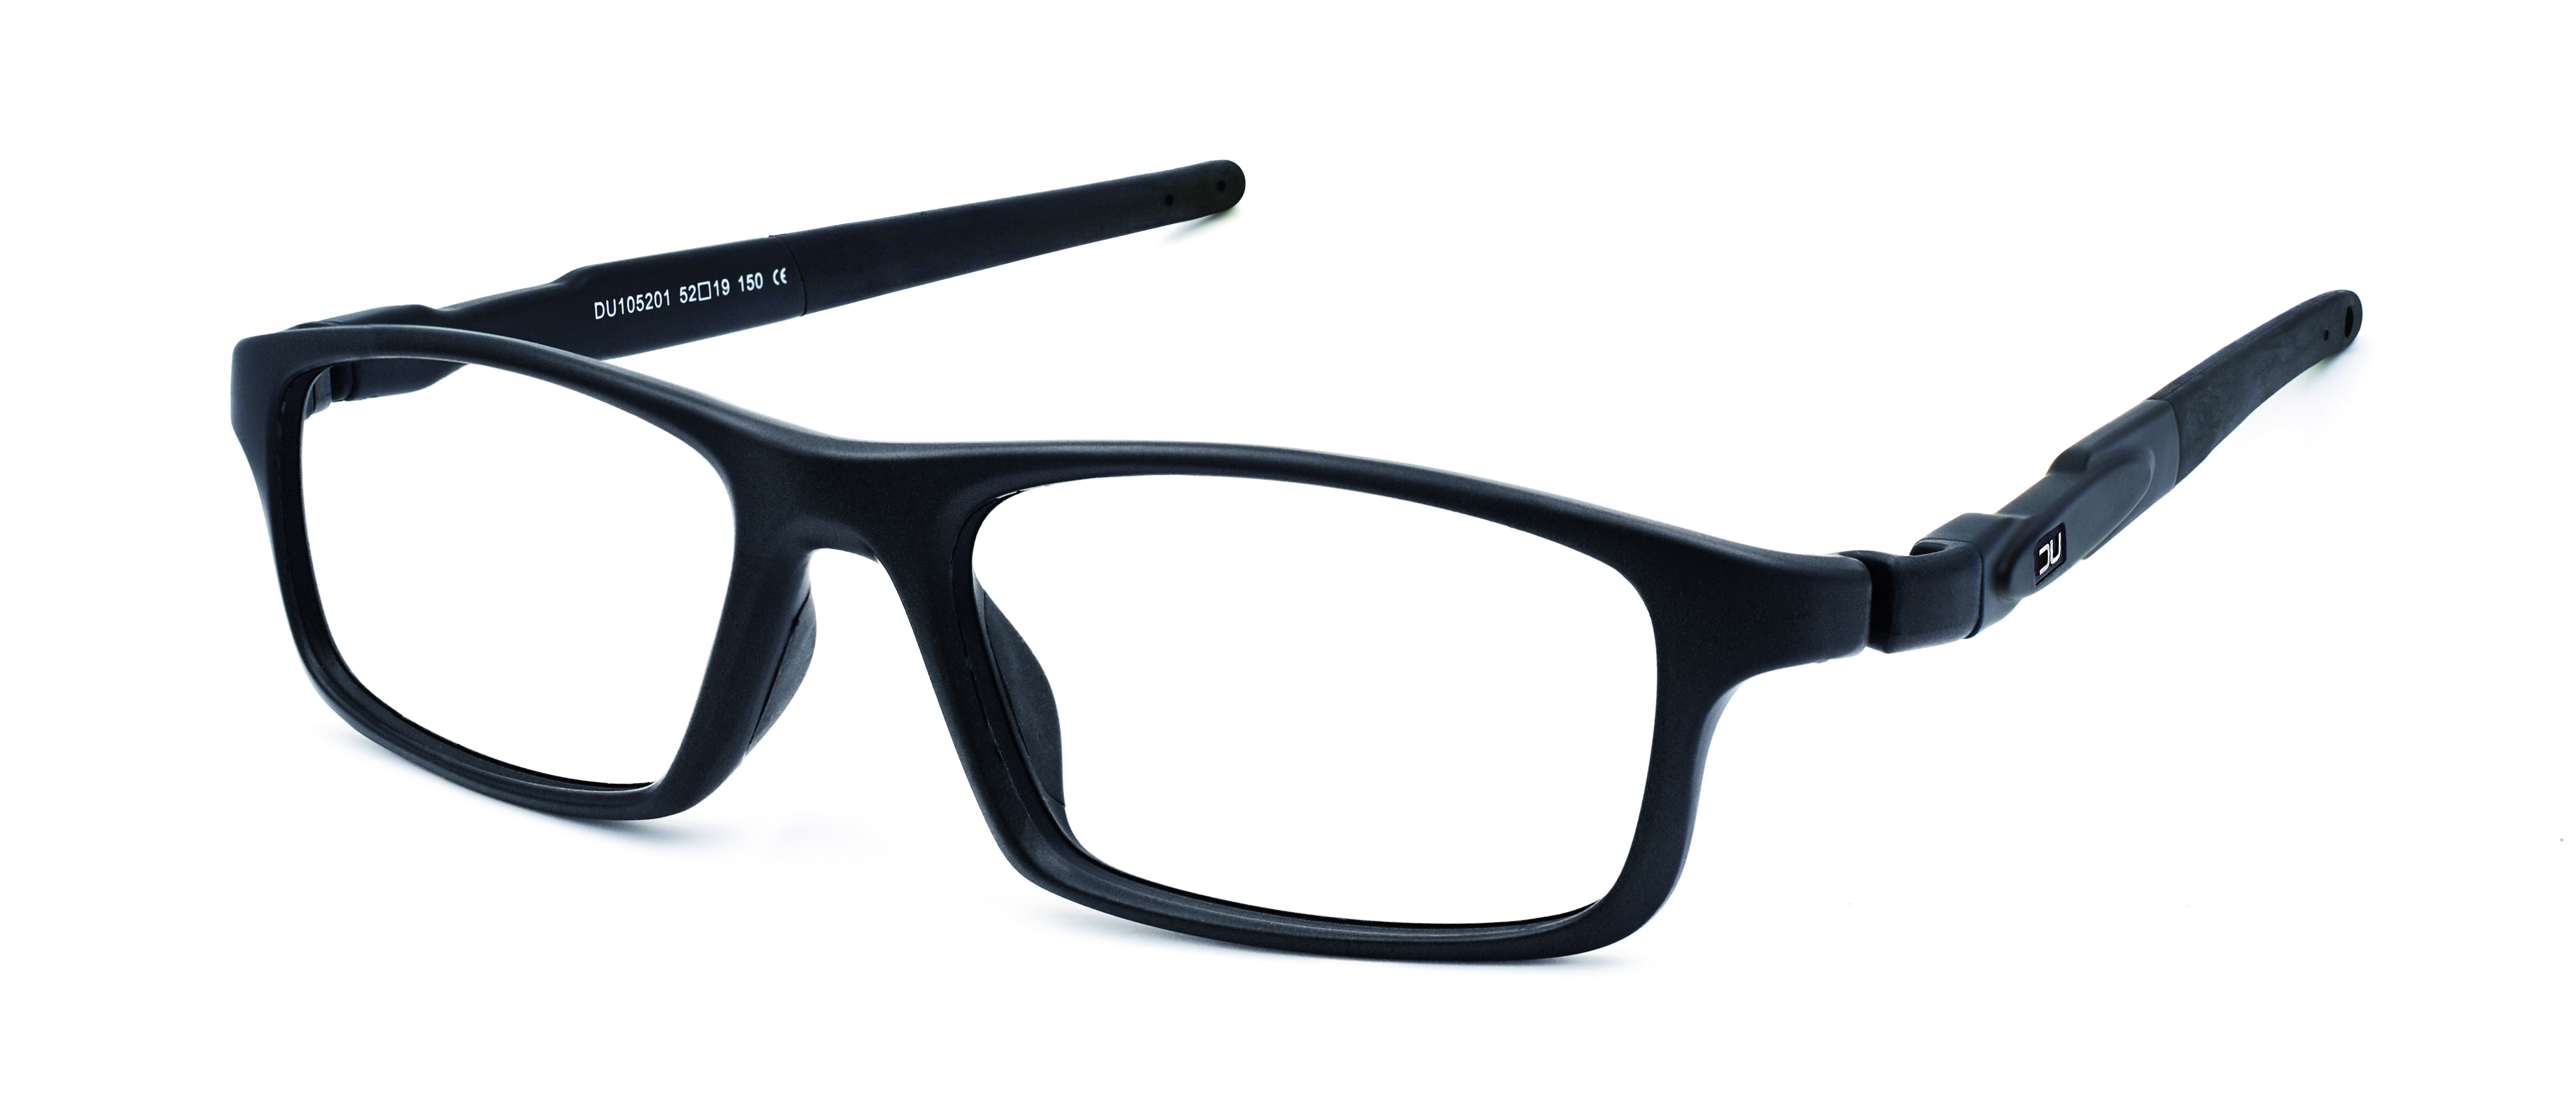 Se pueden devolver unas gafas graduadas multiópticas